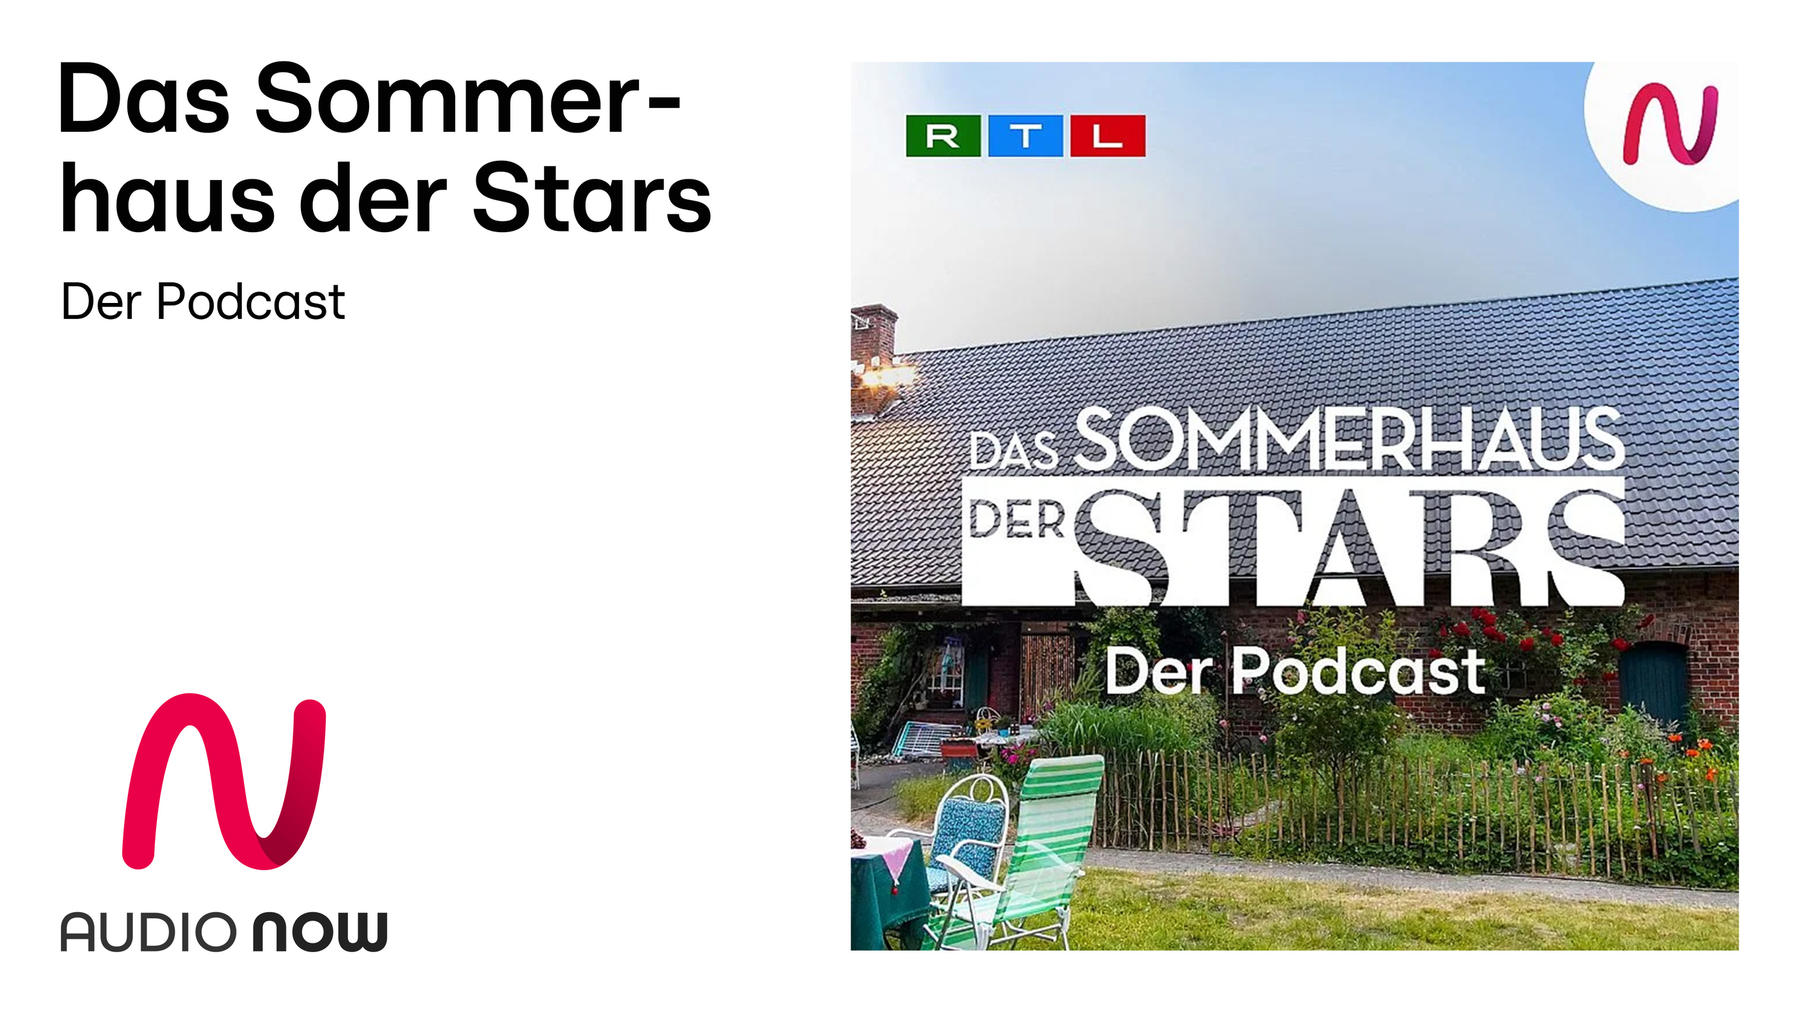 Das Sommerhaus der Stars Podcast